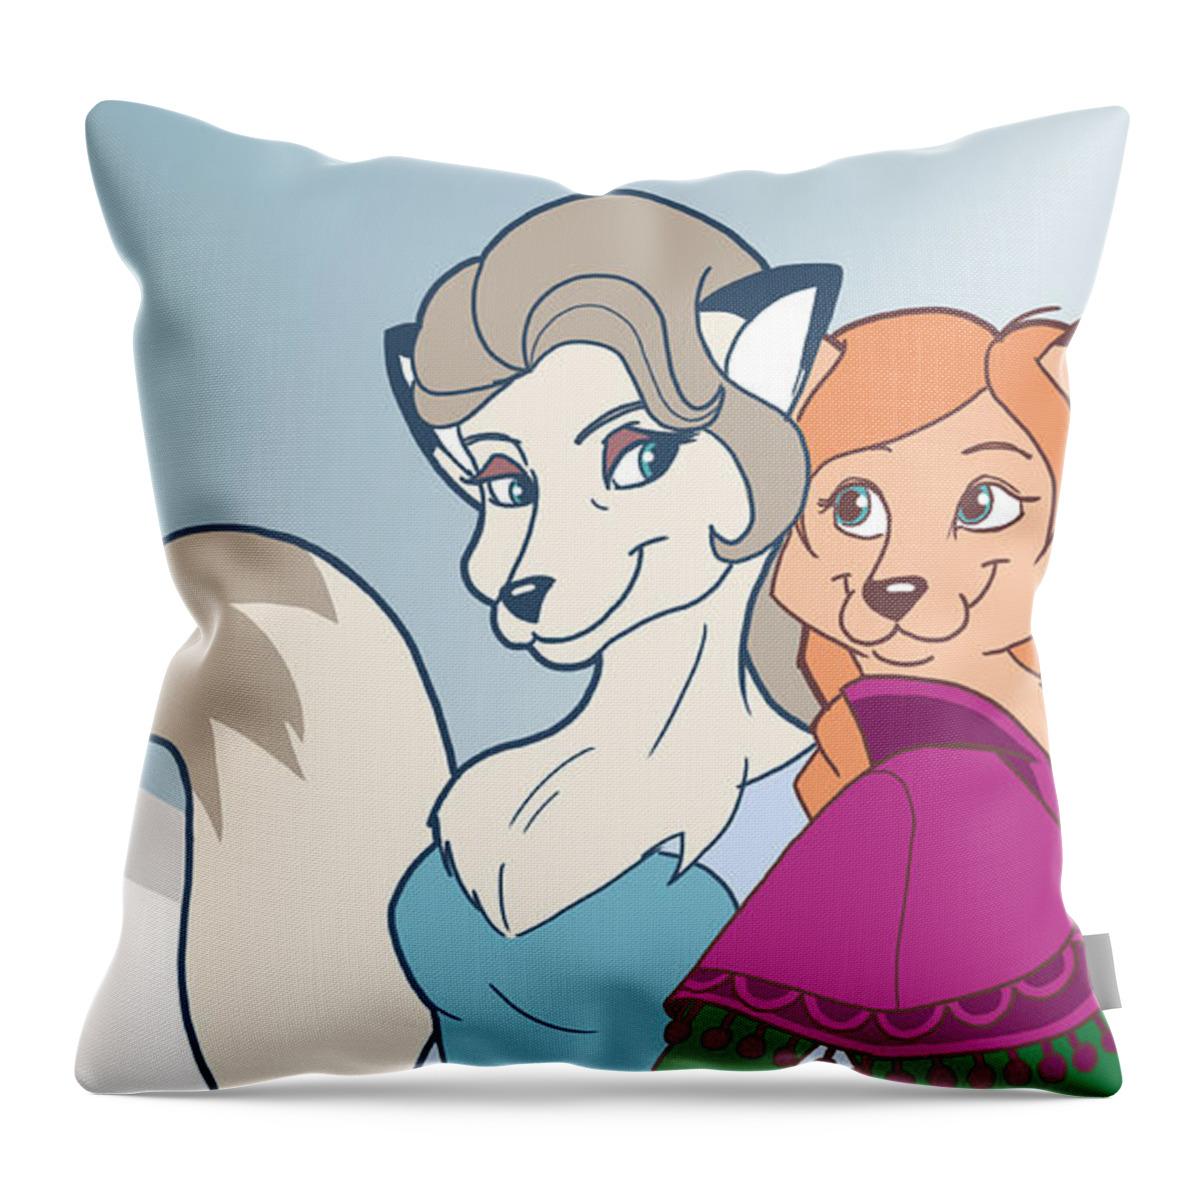 Frozen Throw Pillow featuring the digital art Frozen #4 by Super Lovely